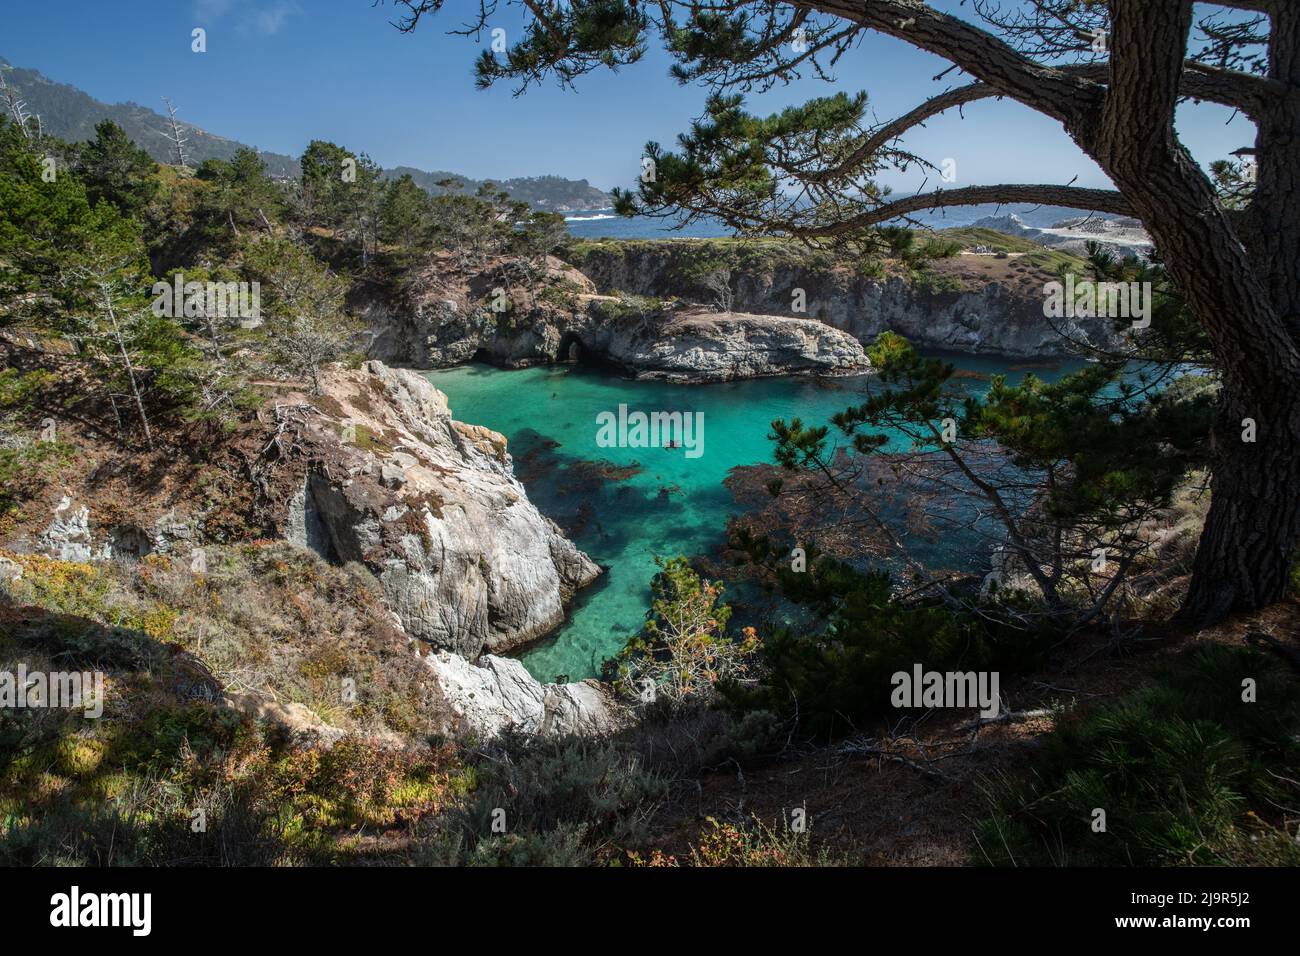 La côte de la réserve d'État de point Lobos à Monterey, en Californie, est un paysage incroyablement beau avec des falaises, des eaux turquoise et des arbres. Banque D'Images